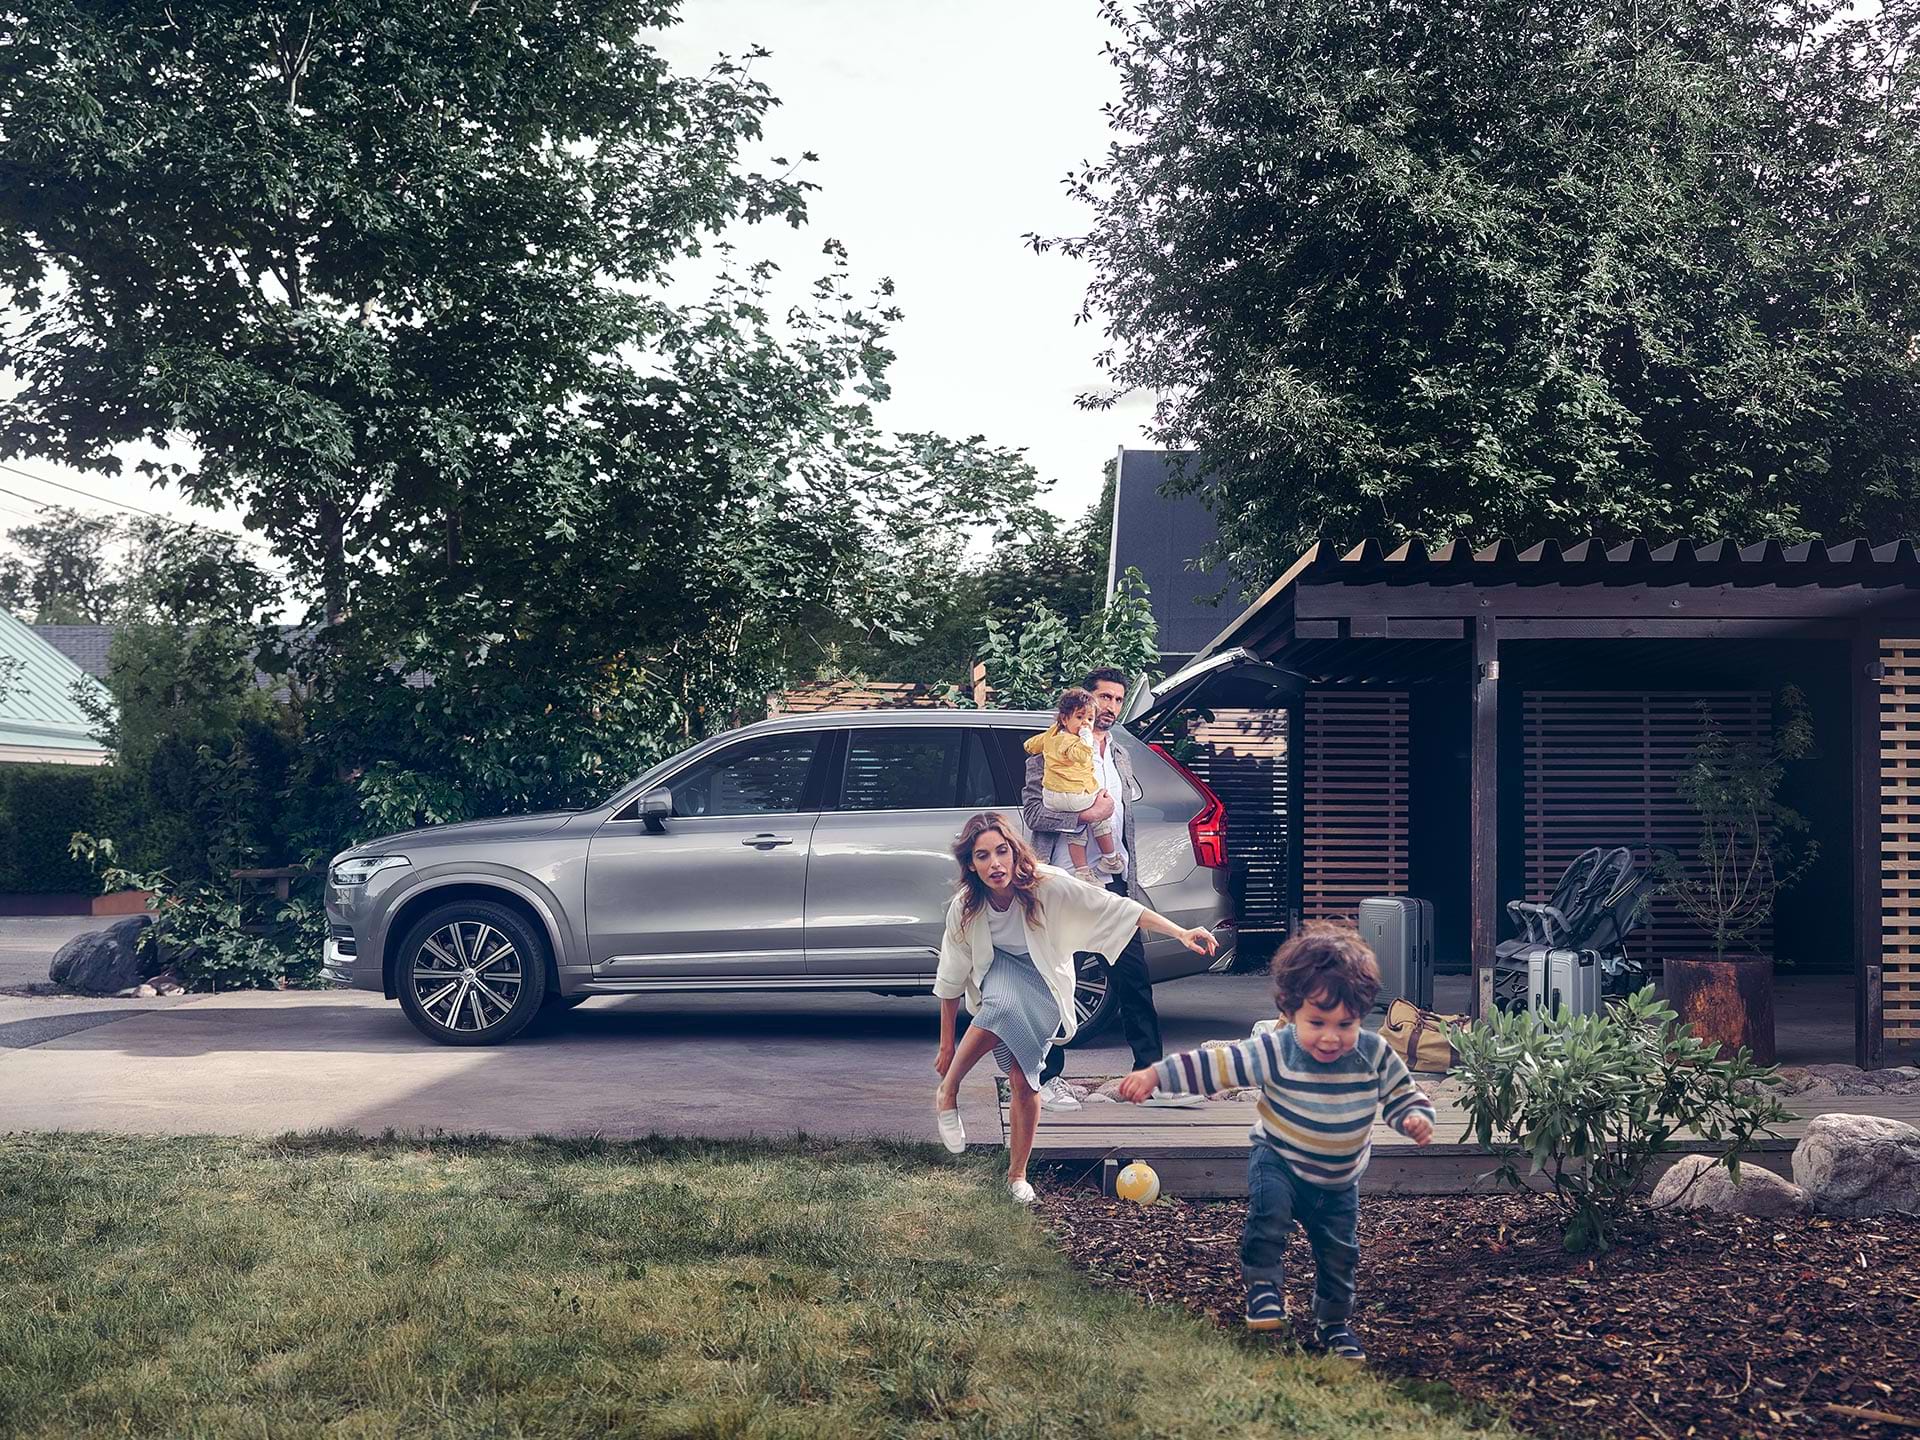 I forstaden gjør en familie seg klar for en tur i sin Volvo SUV. Et barn løper over gårdsplassen mens moren springer etter.